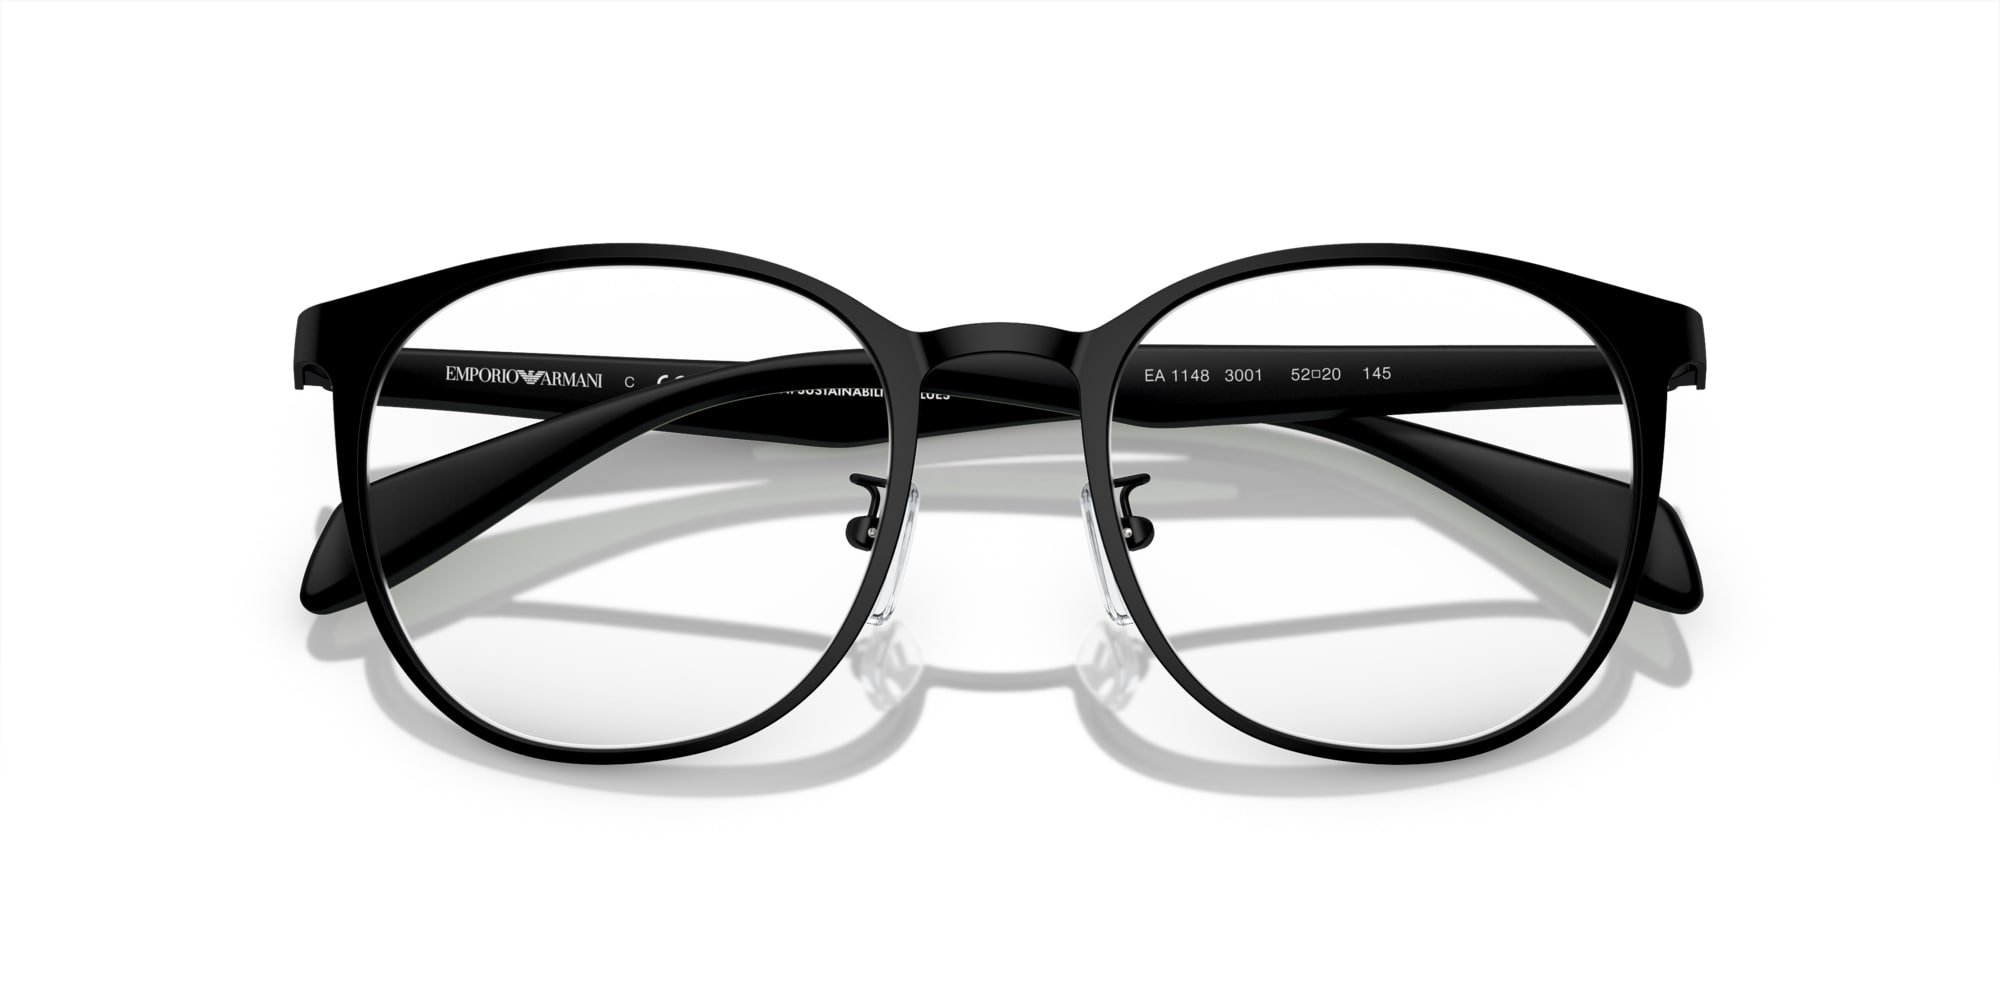 Emporio Armani Brille für Herren in schwarz matt EA1148 3001 52